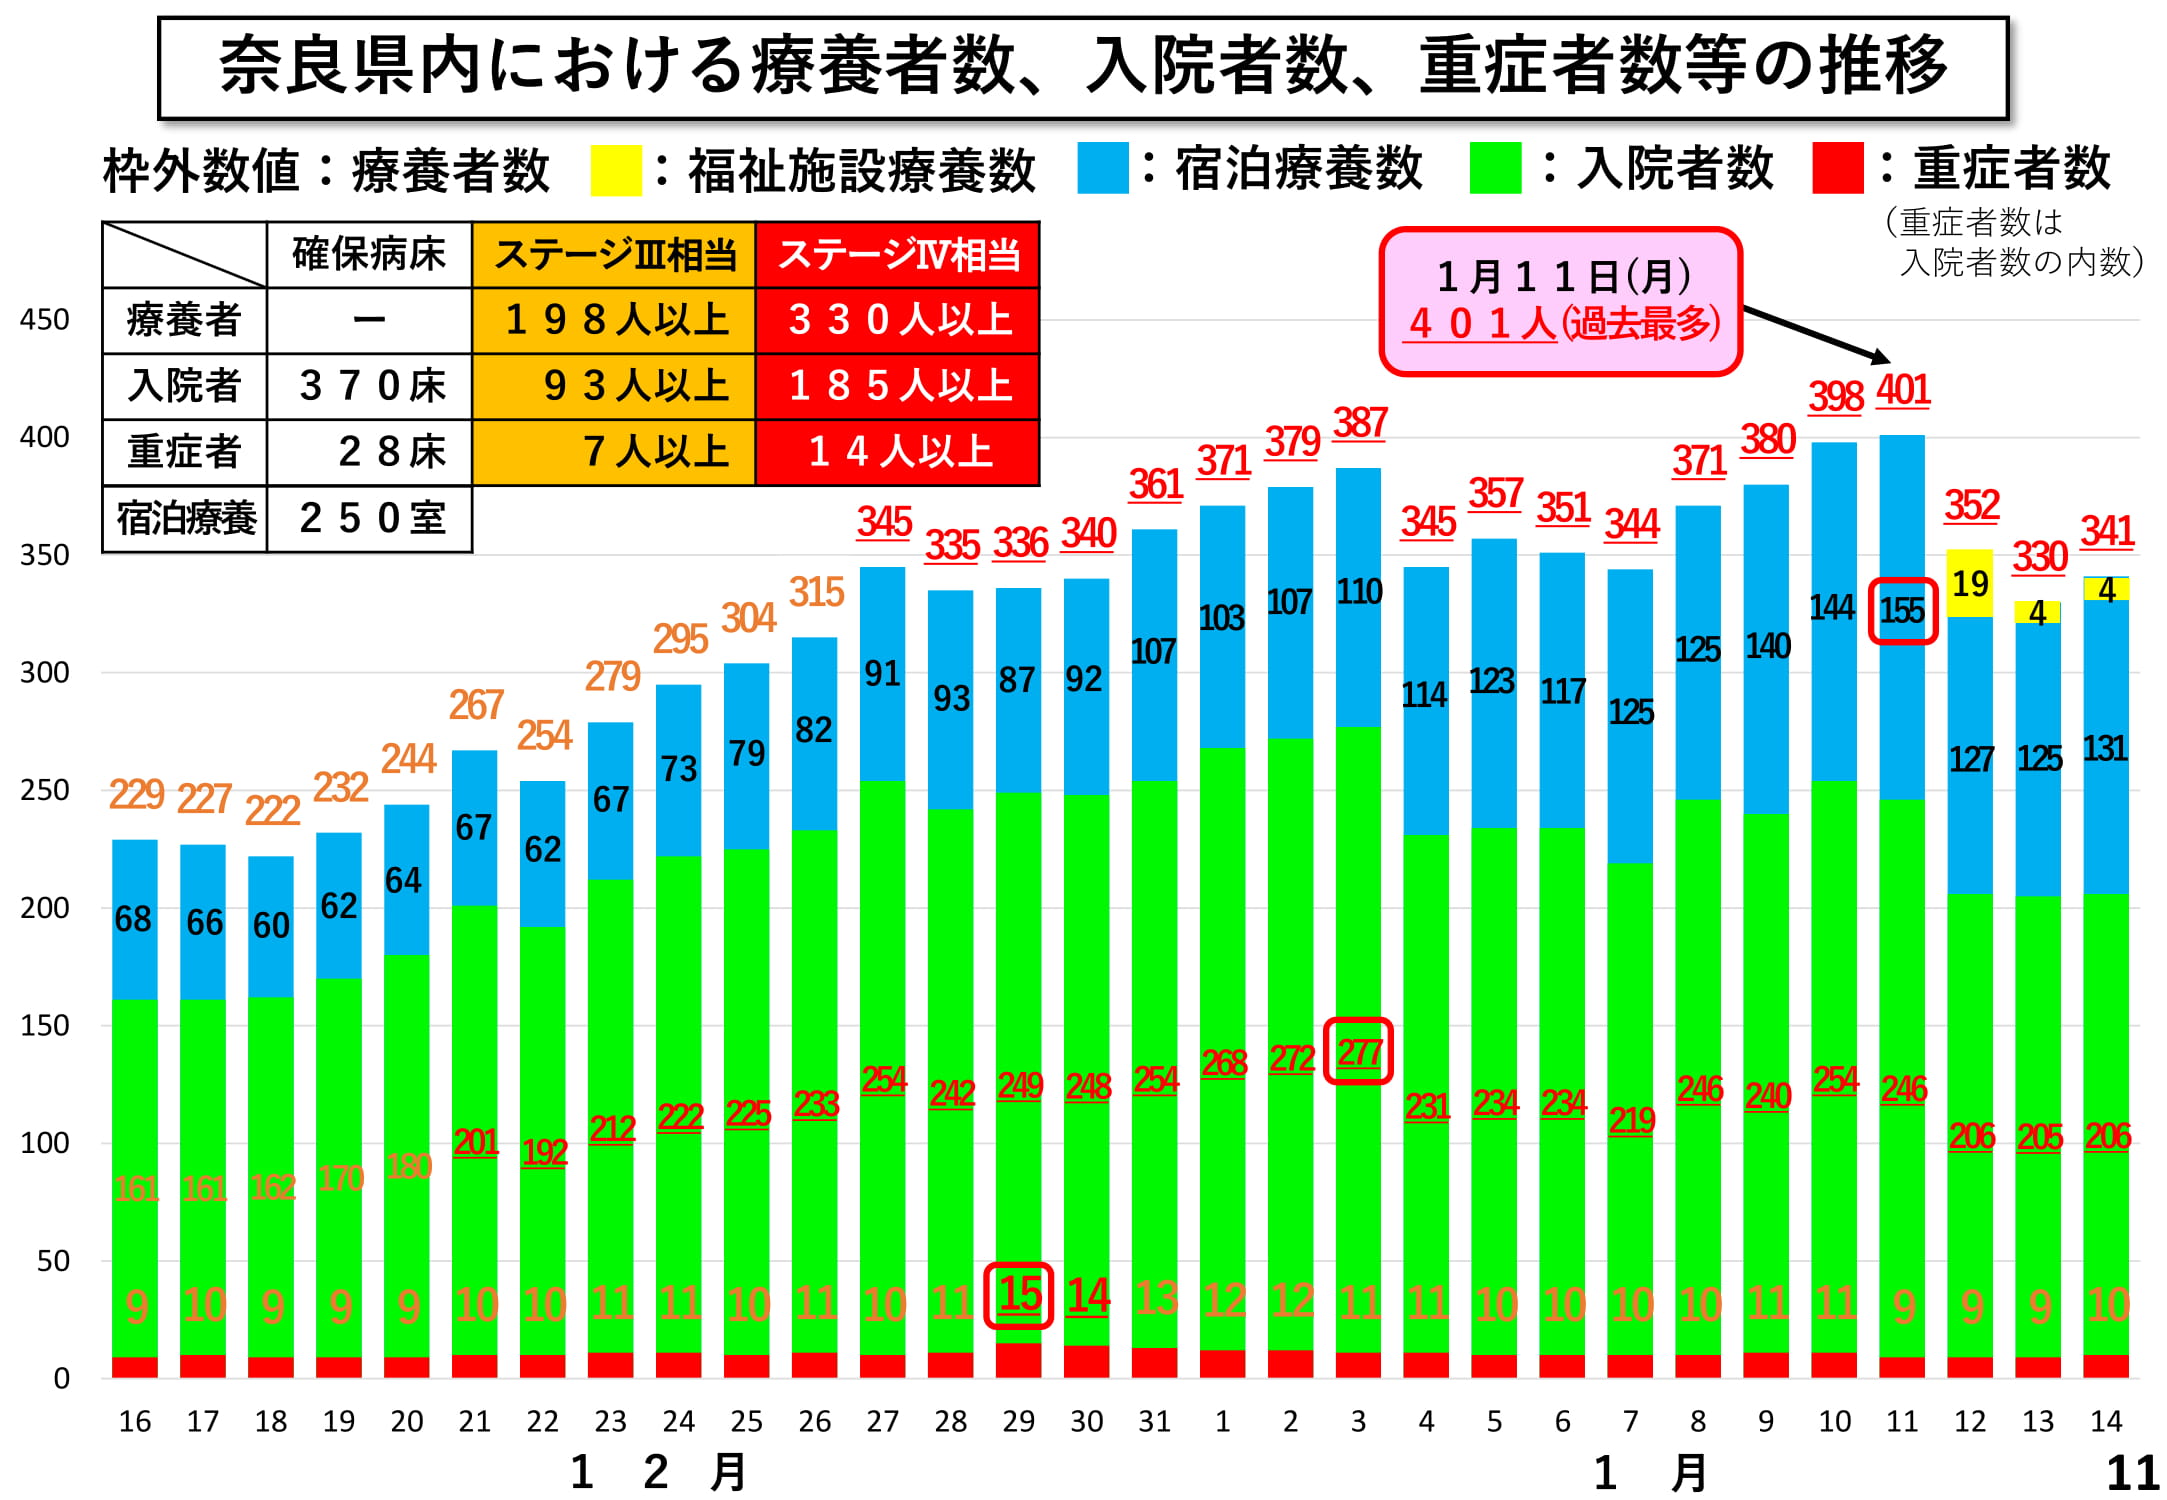 奈良県内における療養者数、入院者数、重症者数等の推移